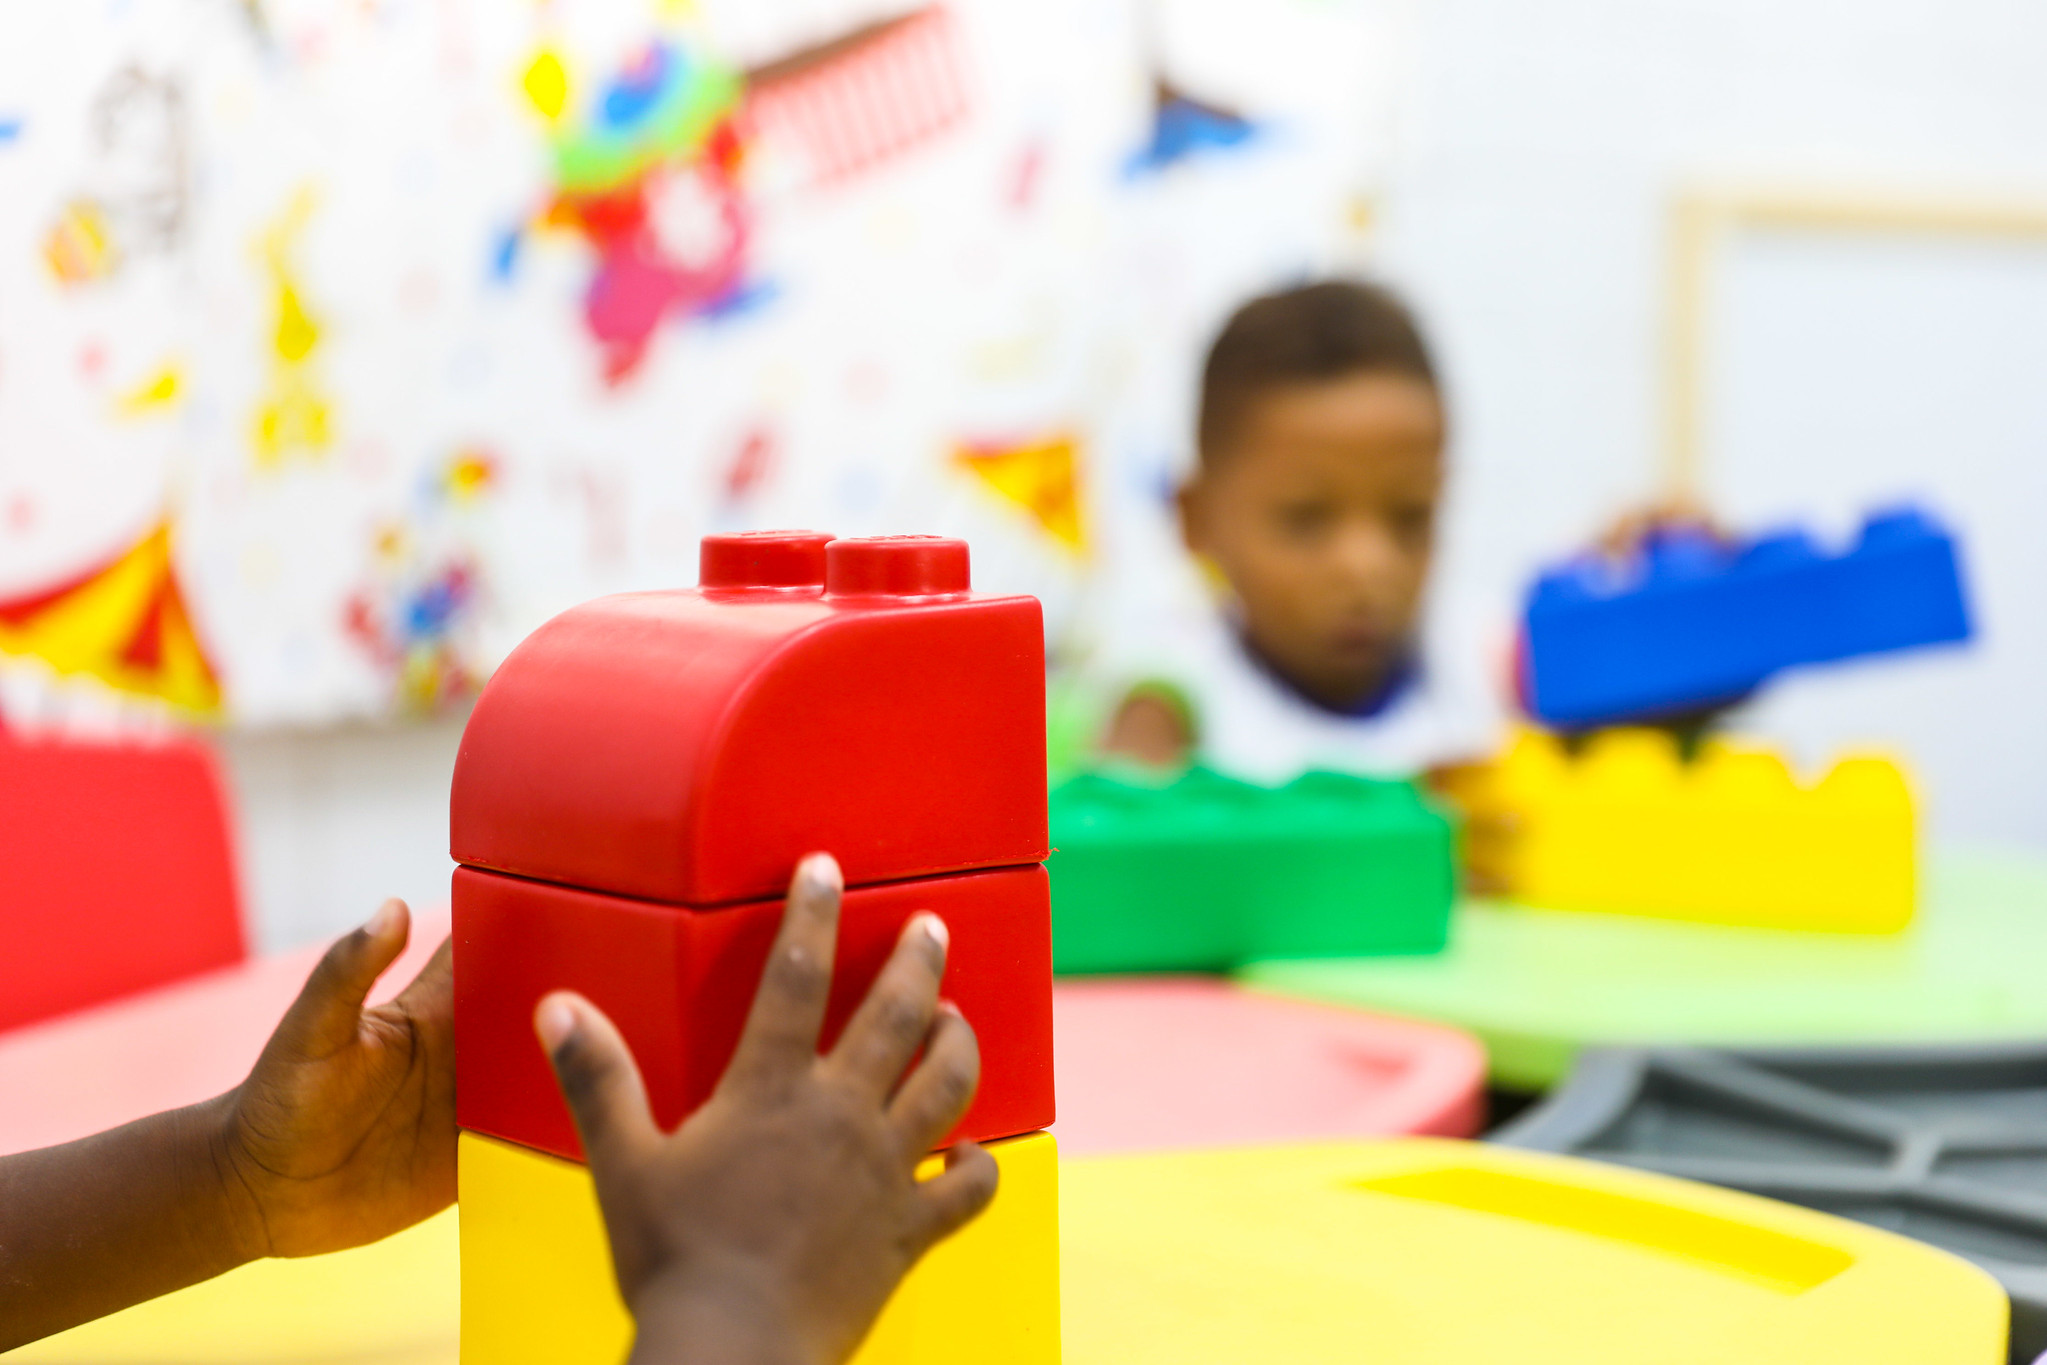 A foto mostra as mãos de uma criança brincando com um grande bloco vermelho de construção. O bloco parece fazer parte de um conjunto de brinquedos semelhantes. O cenário sugere uma área de brincadeira interna ou uma sala de aula, conforme indicado pela decoração colorida e os móveis ao fundo. O foco está na interação da criança com o brinquedo